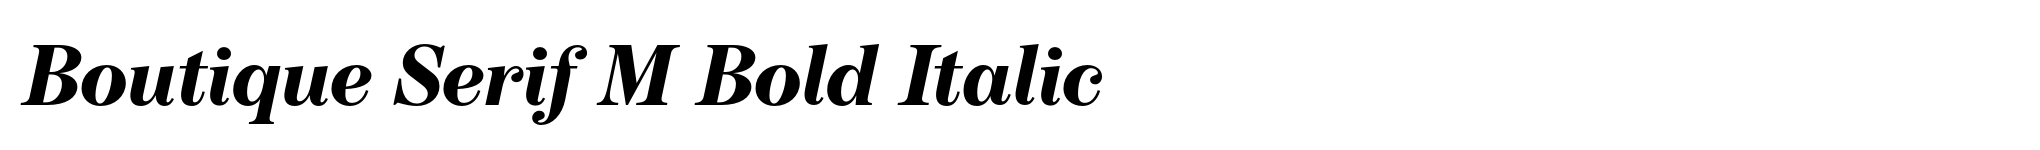 Boutique Serif M Bold Italic image